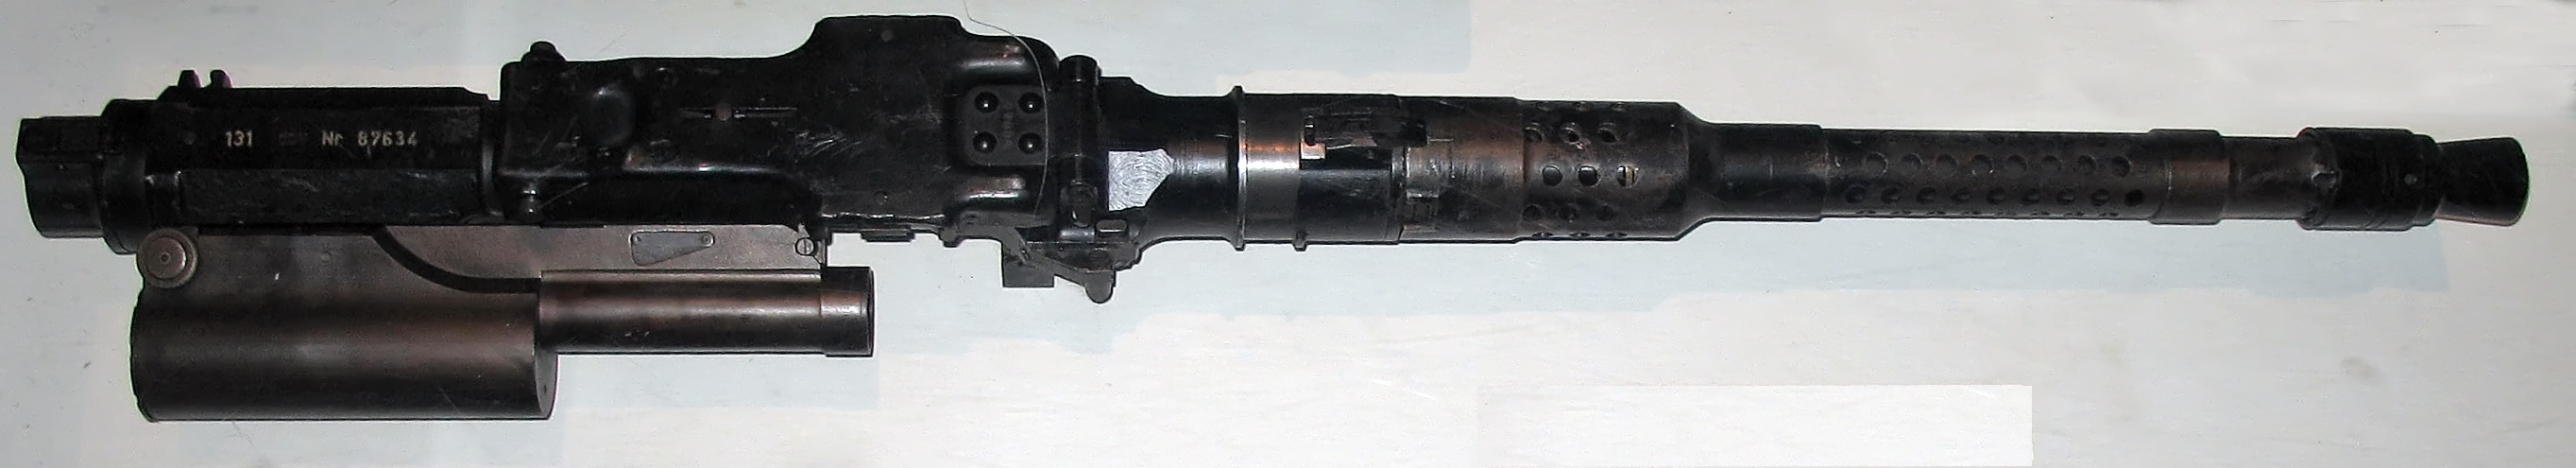 M.G. 131 (mitrailleuse de 13 mm , Modèle 1)